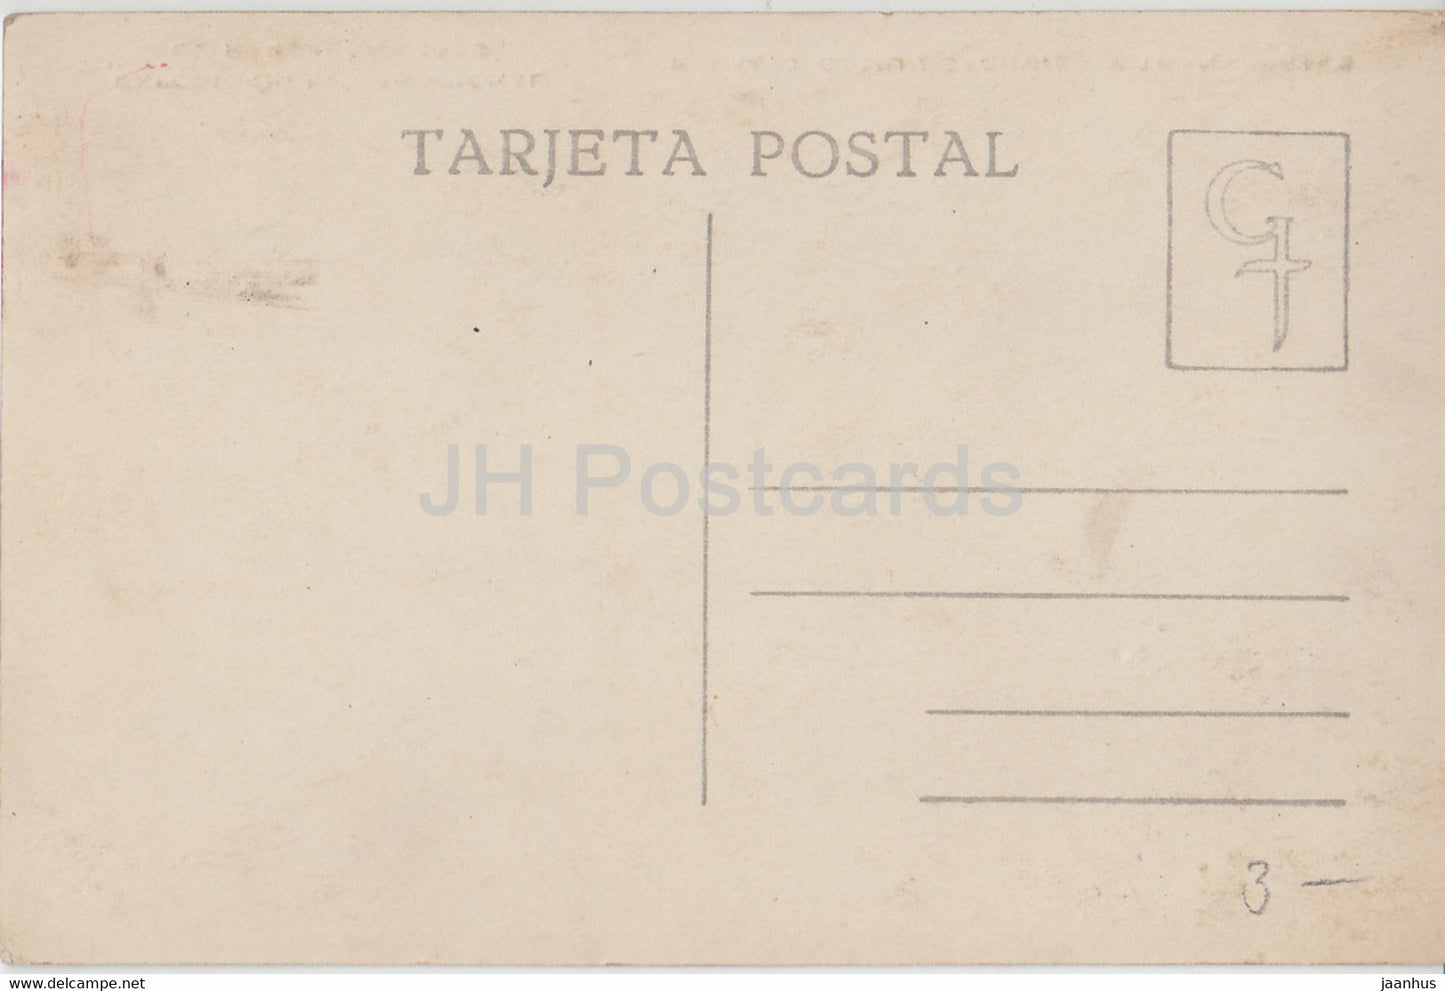 Exposicion Internacional de Barcelona 1929 - Palacio Comunicaciones y Transportes - voiture - carte postale ancienne - Espagne - inutilisée